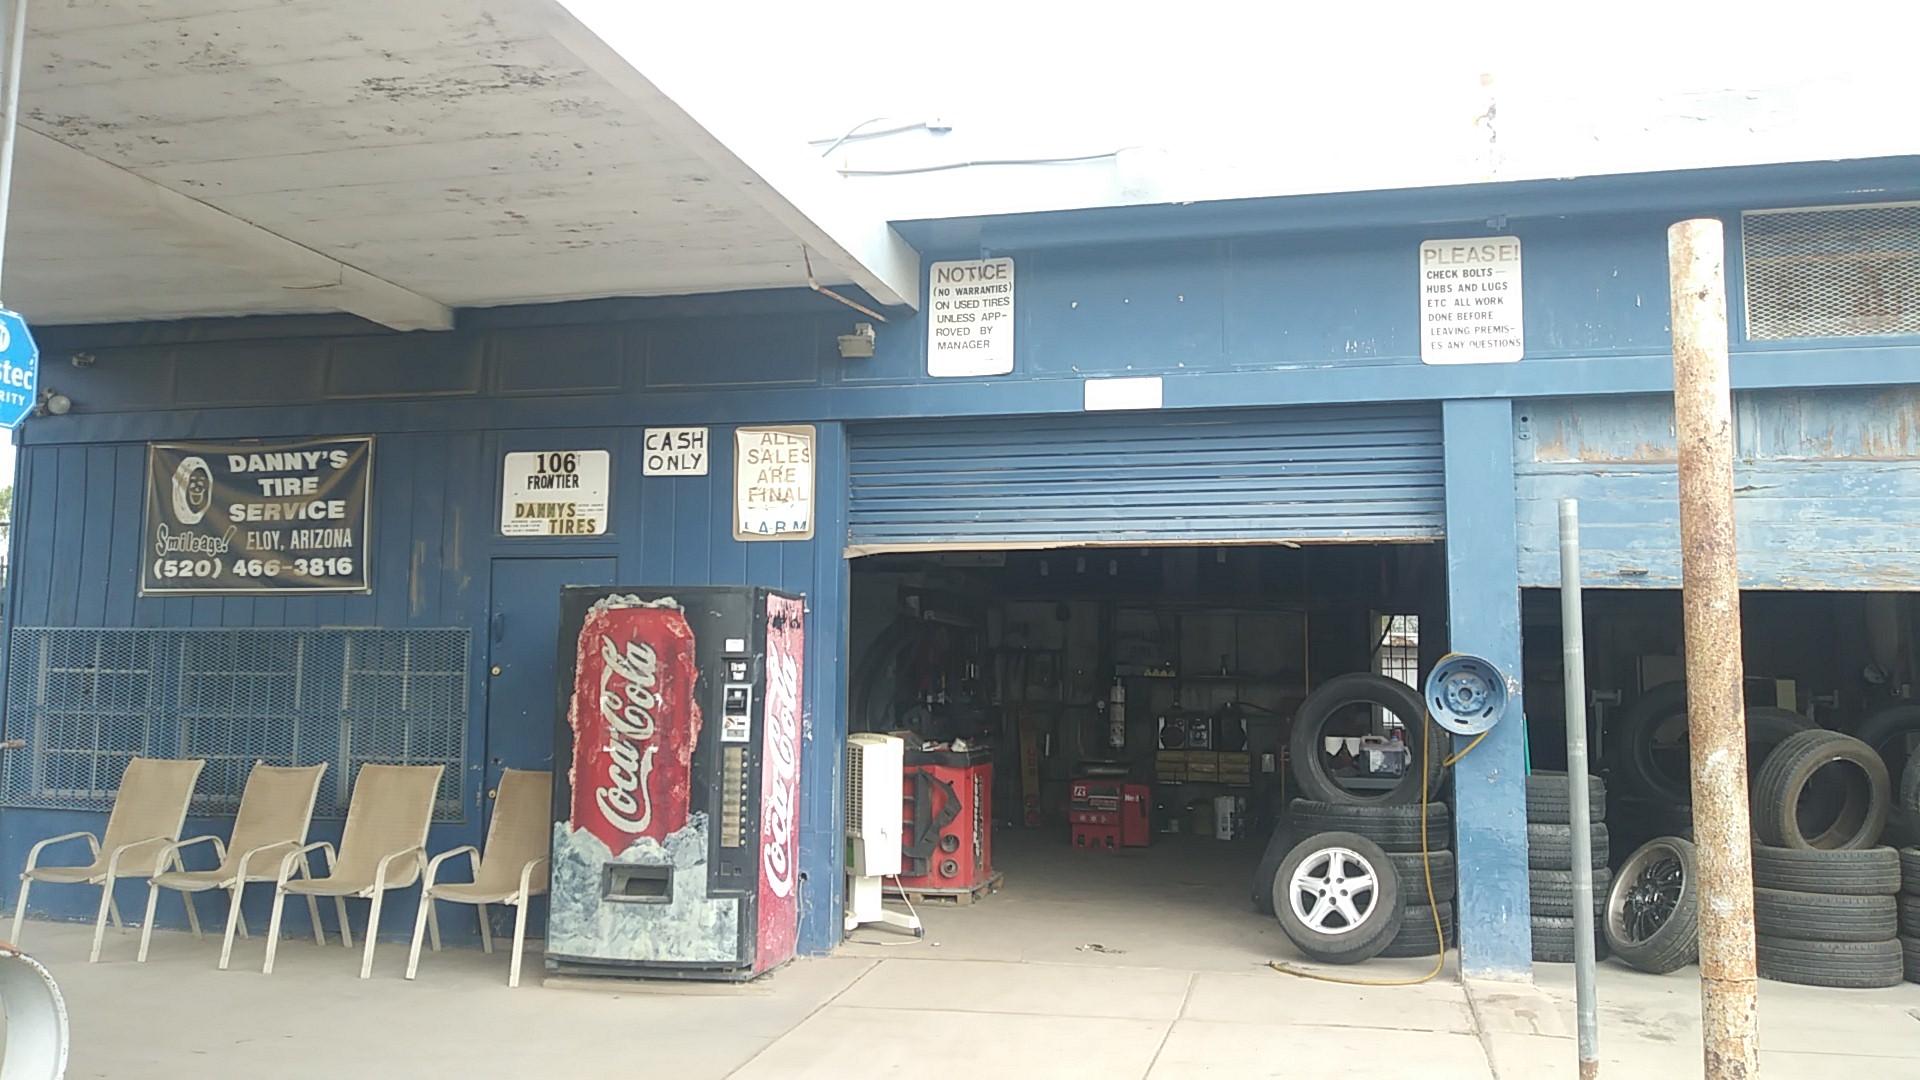 Danny's Auto & Tire Services